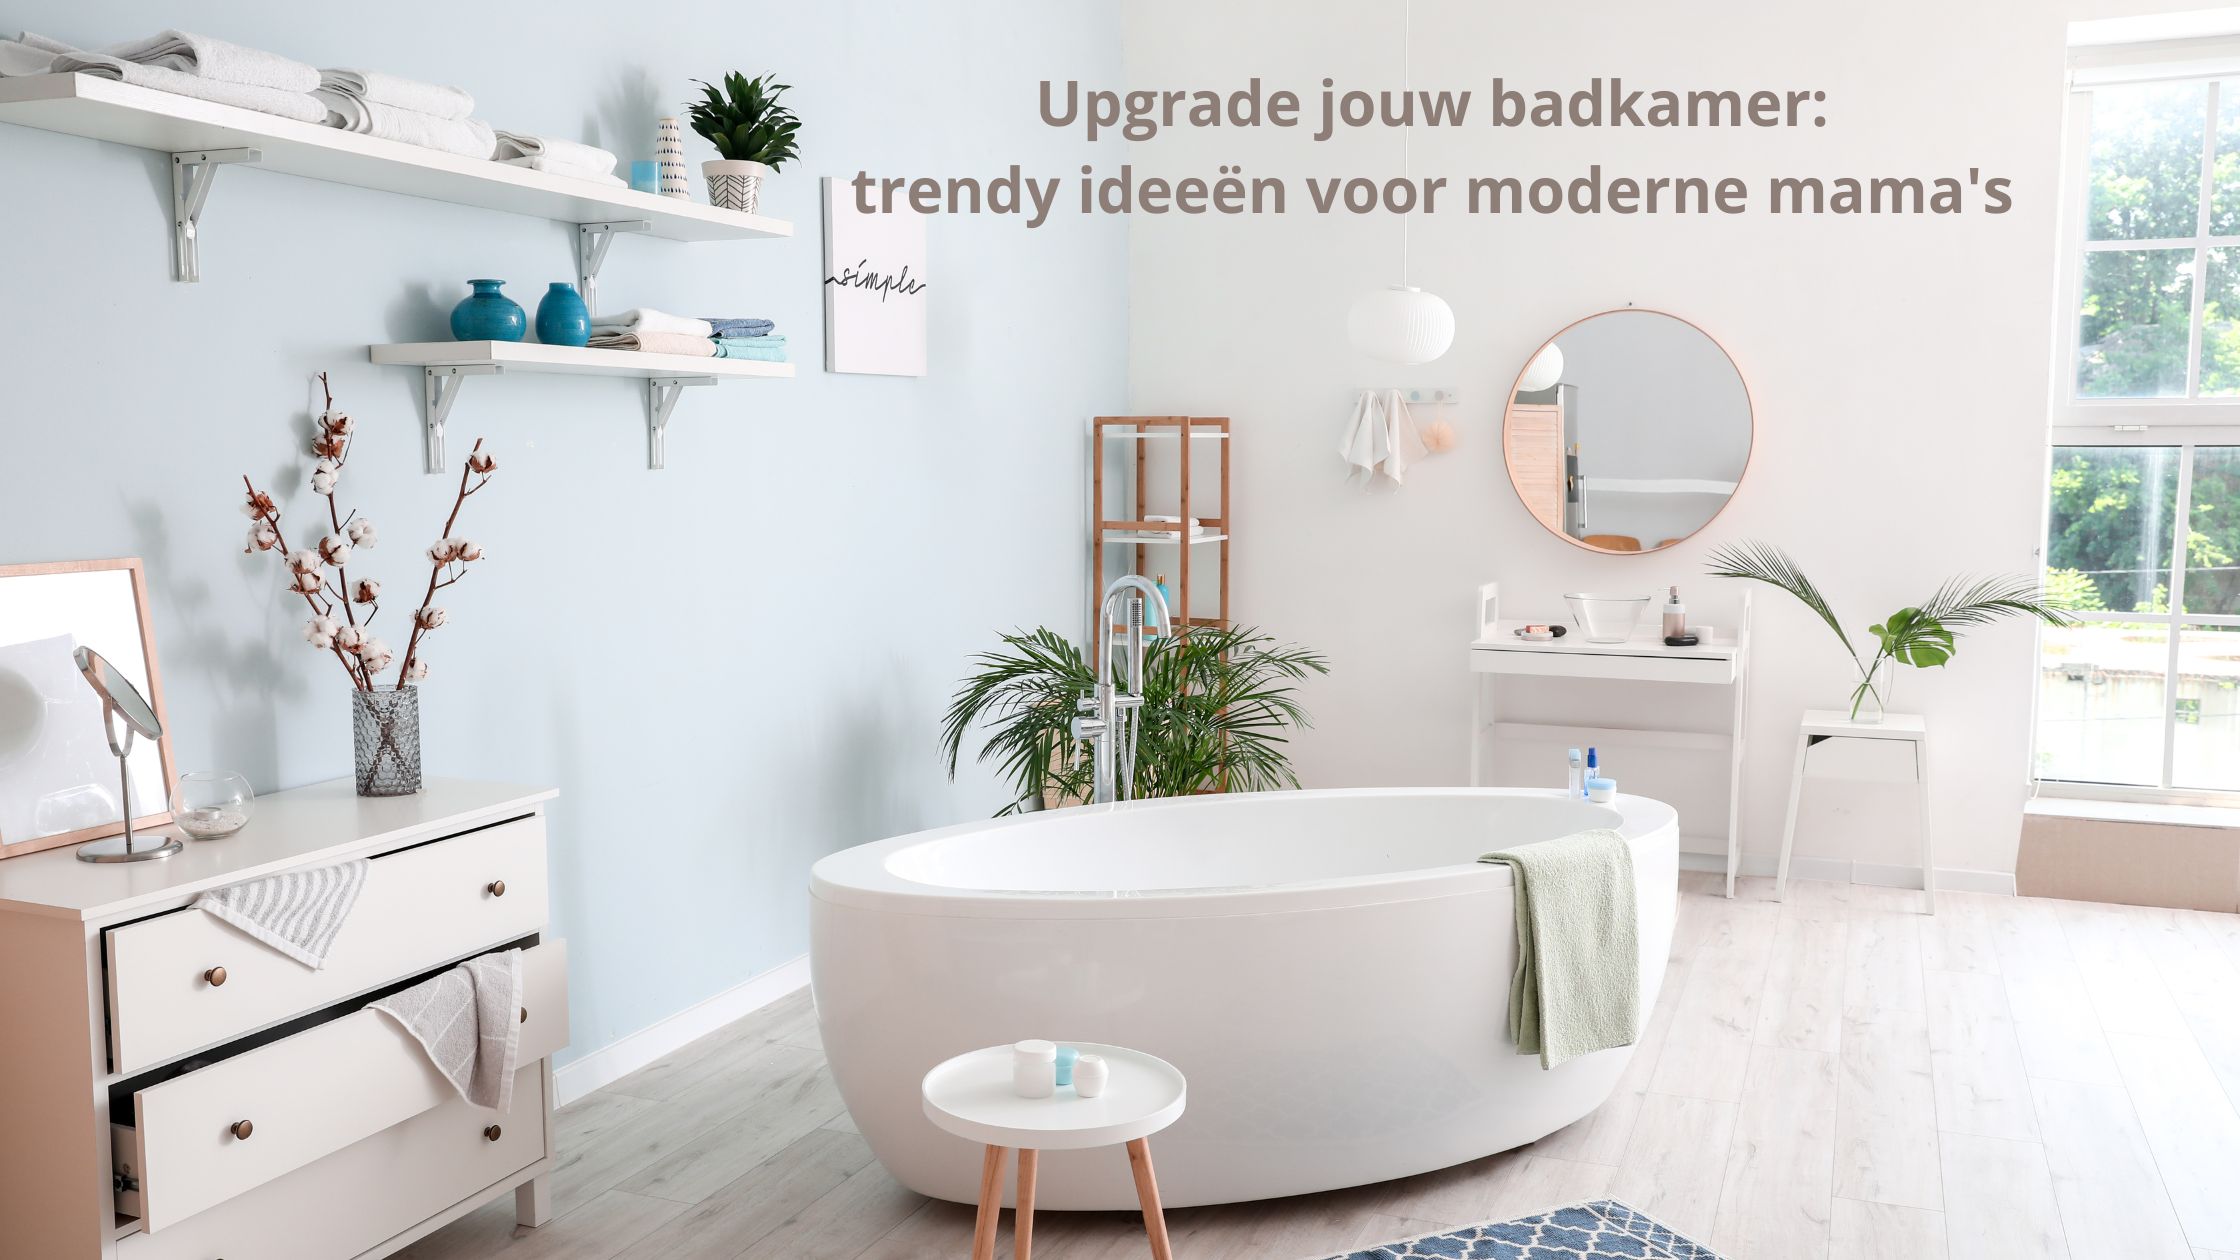 Upgrade jouw badkamer: trendy ideeën voor moderne mama's